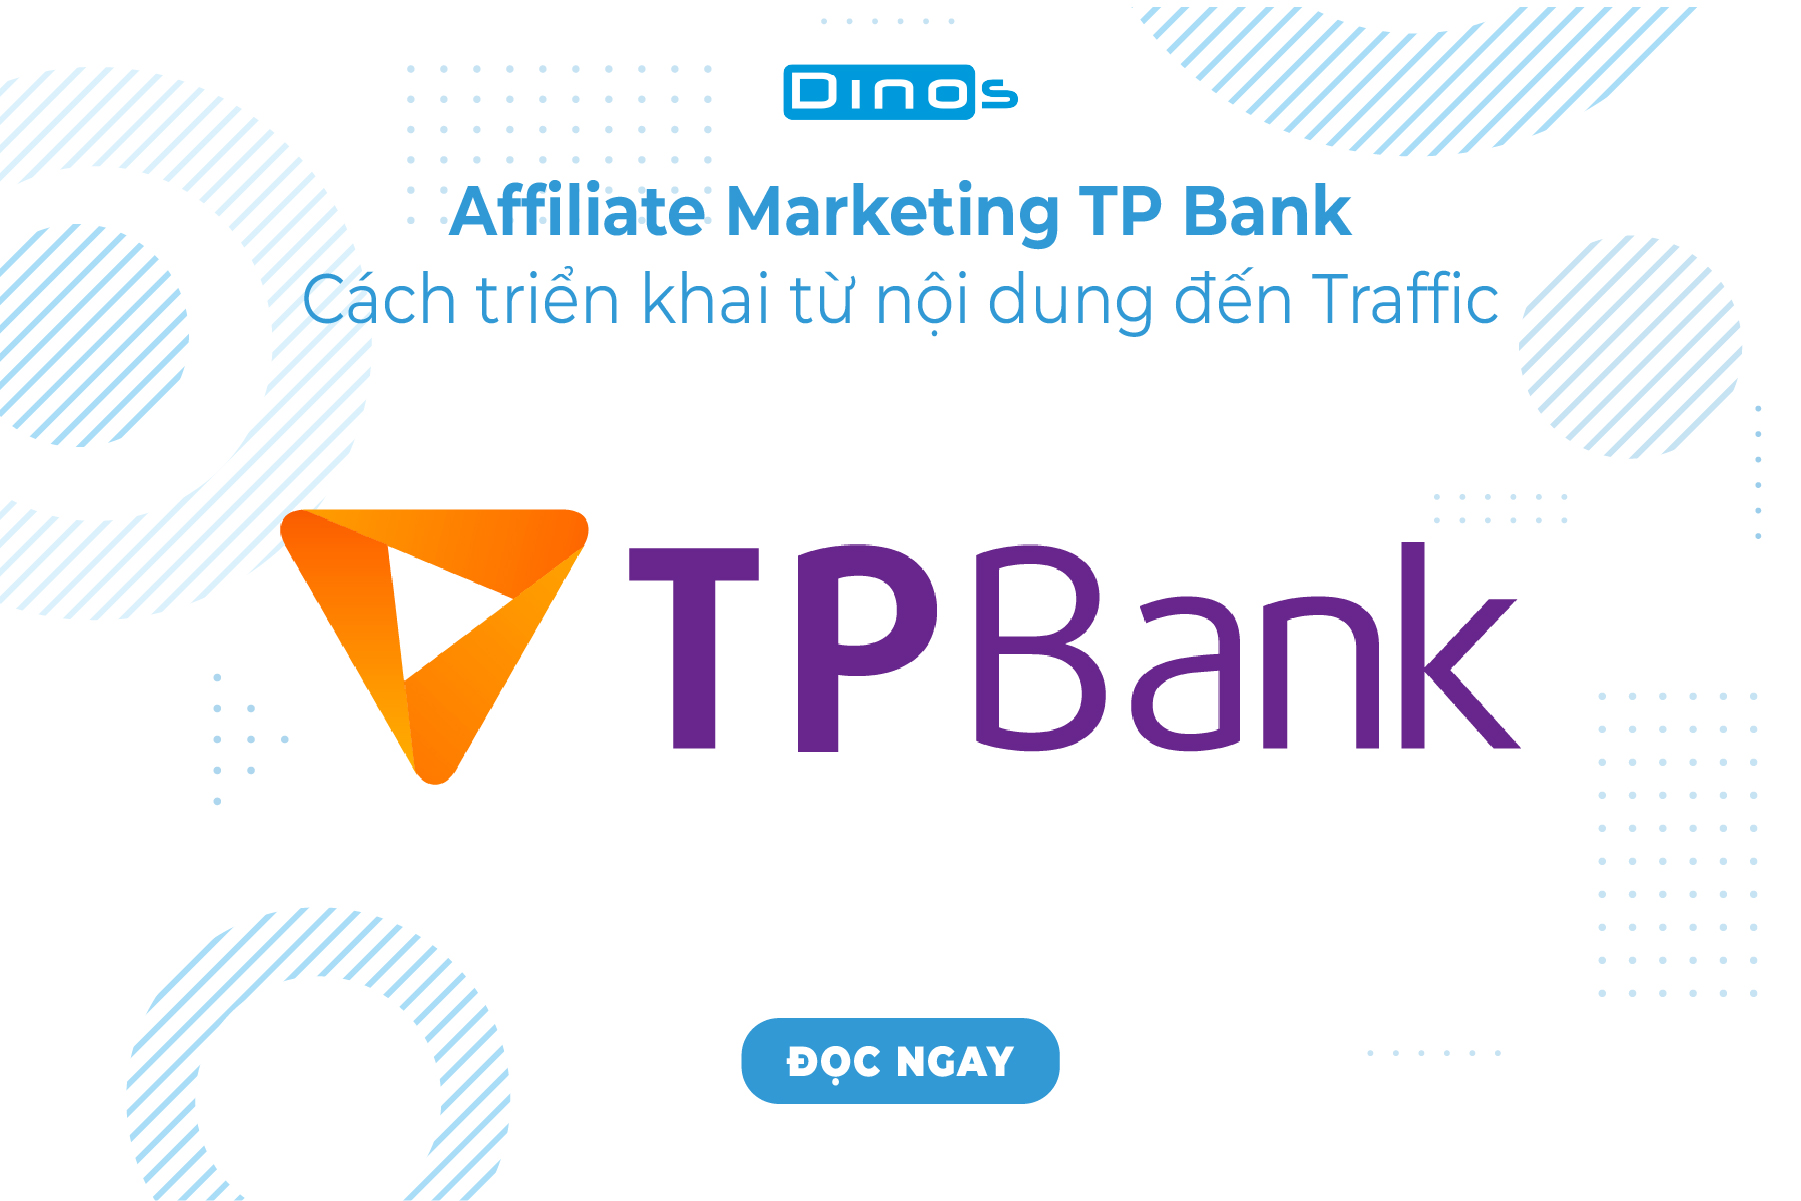 Affiliate Marketing TP Bank - Cách triển khai từ nội dung đến traffic